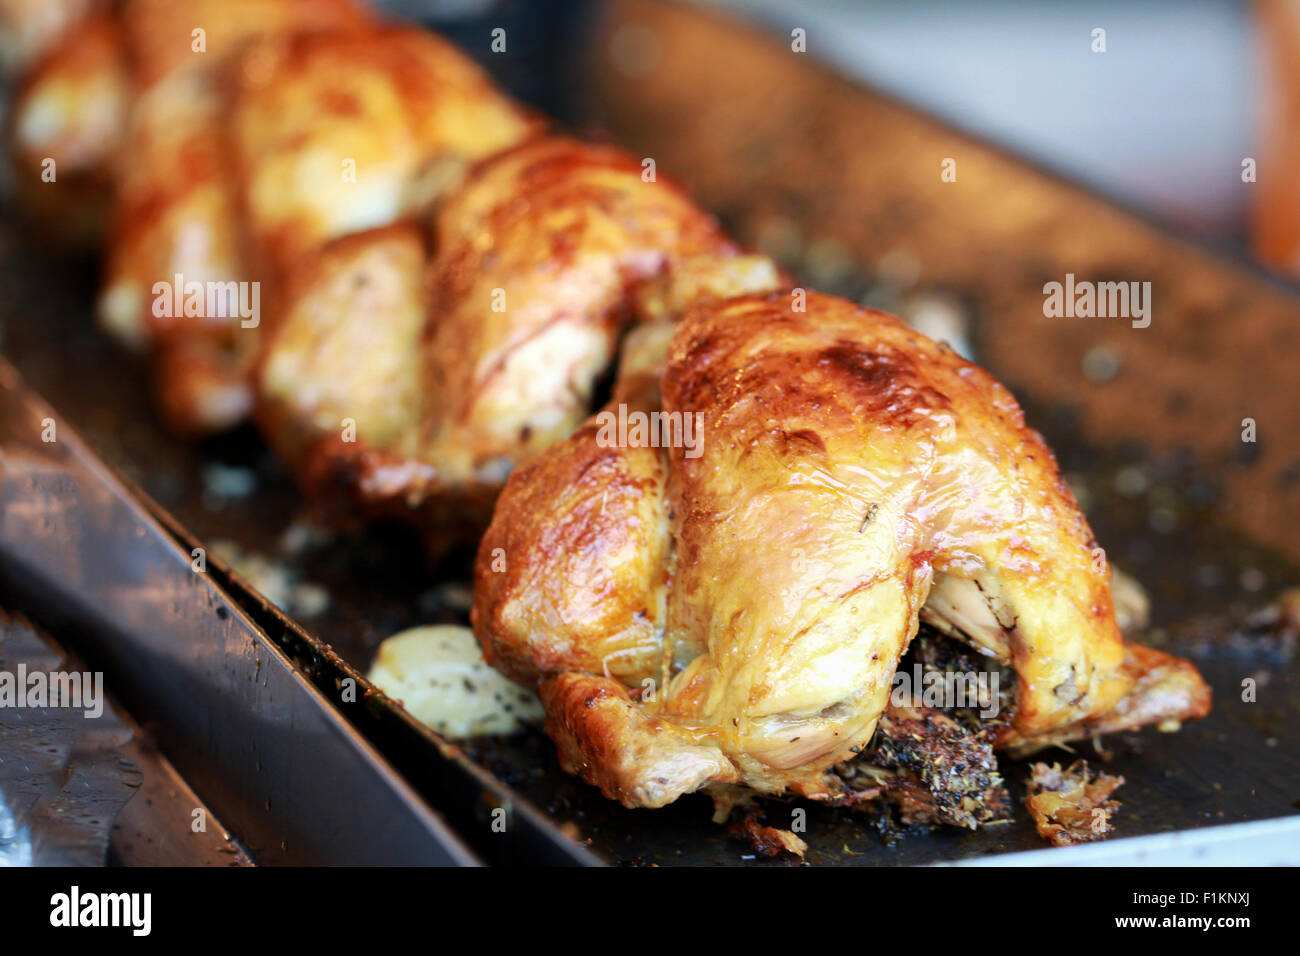 Eine Reihe von frisch gekocht, am Spieß gebratene Hühner, auf einem Tablett zum Kauf bereit. Sie haben eine goldene knusprige Haut und sind gefüllt mit Knoblauch und Kräutern Stockfoto